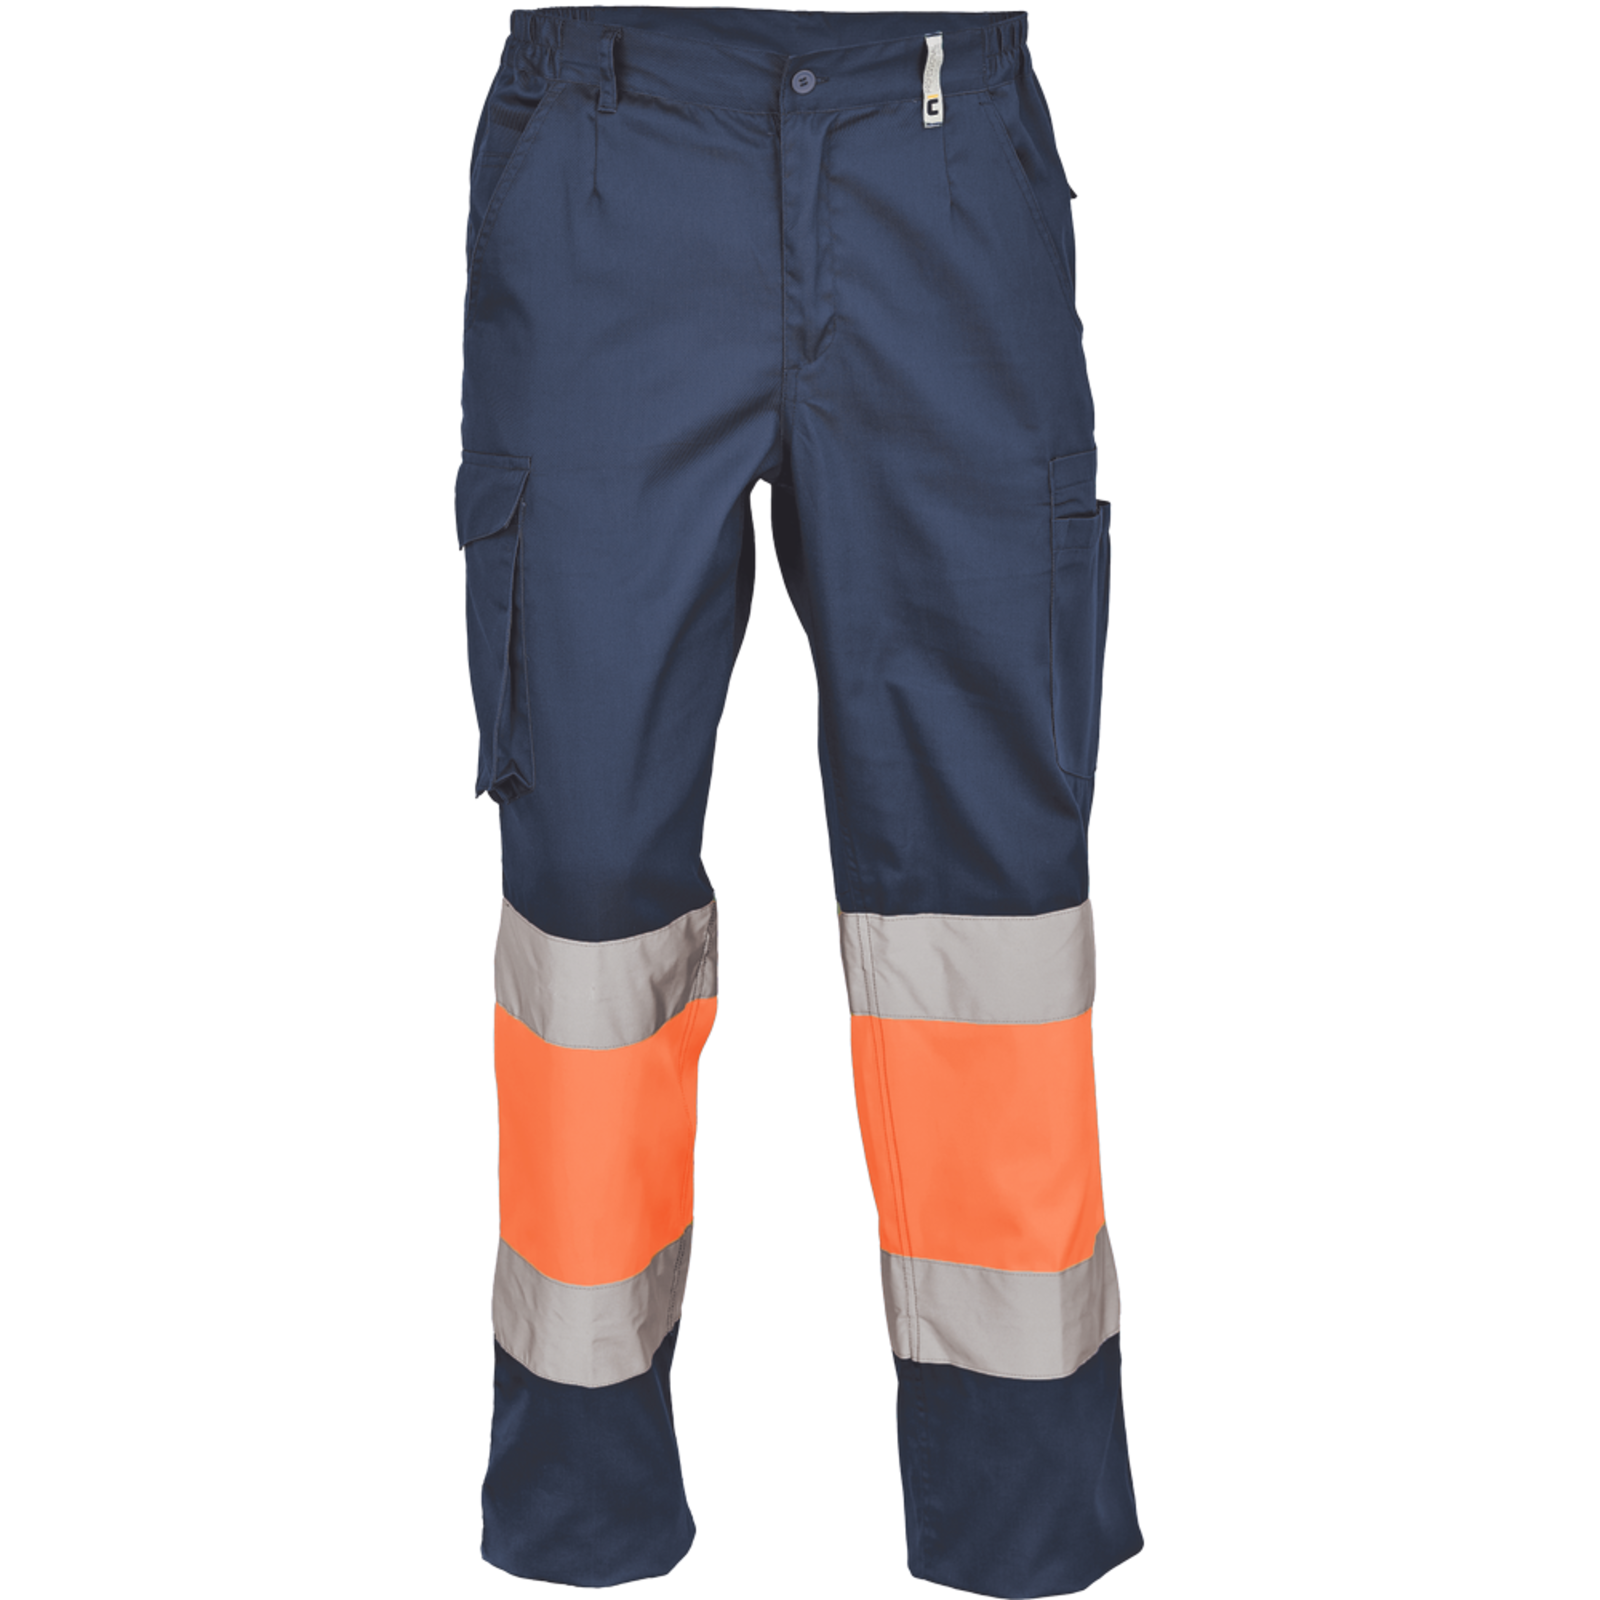 Pracovné reflexné nohavice Cerva Ciudades Bilbao HV - veľkosť: 60, farba: nám. modrá/oranžová